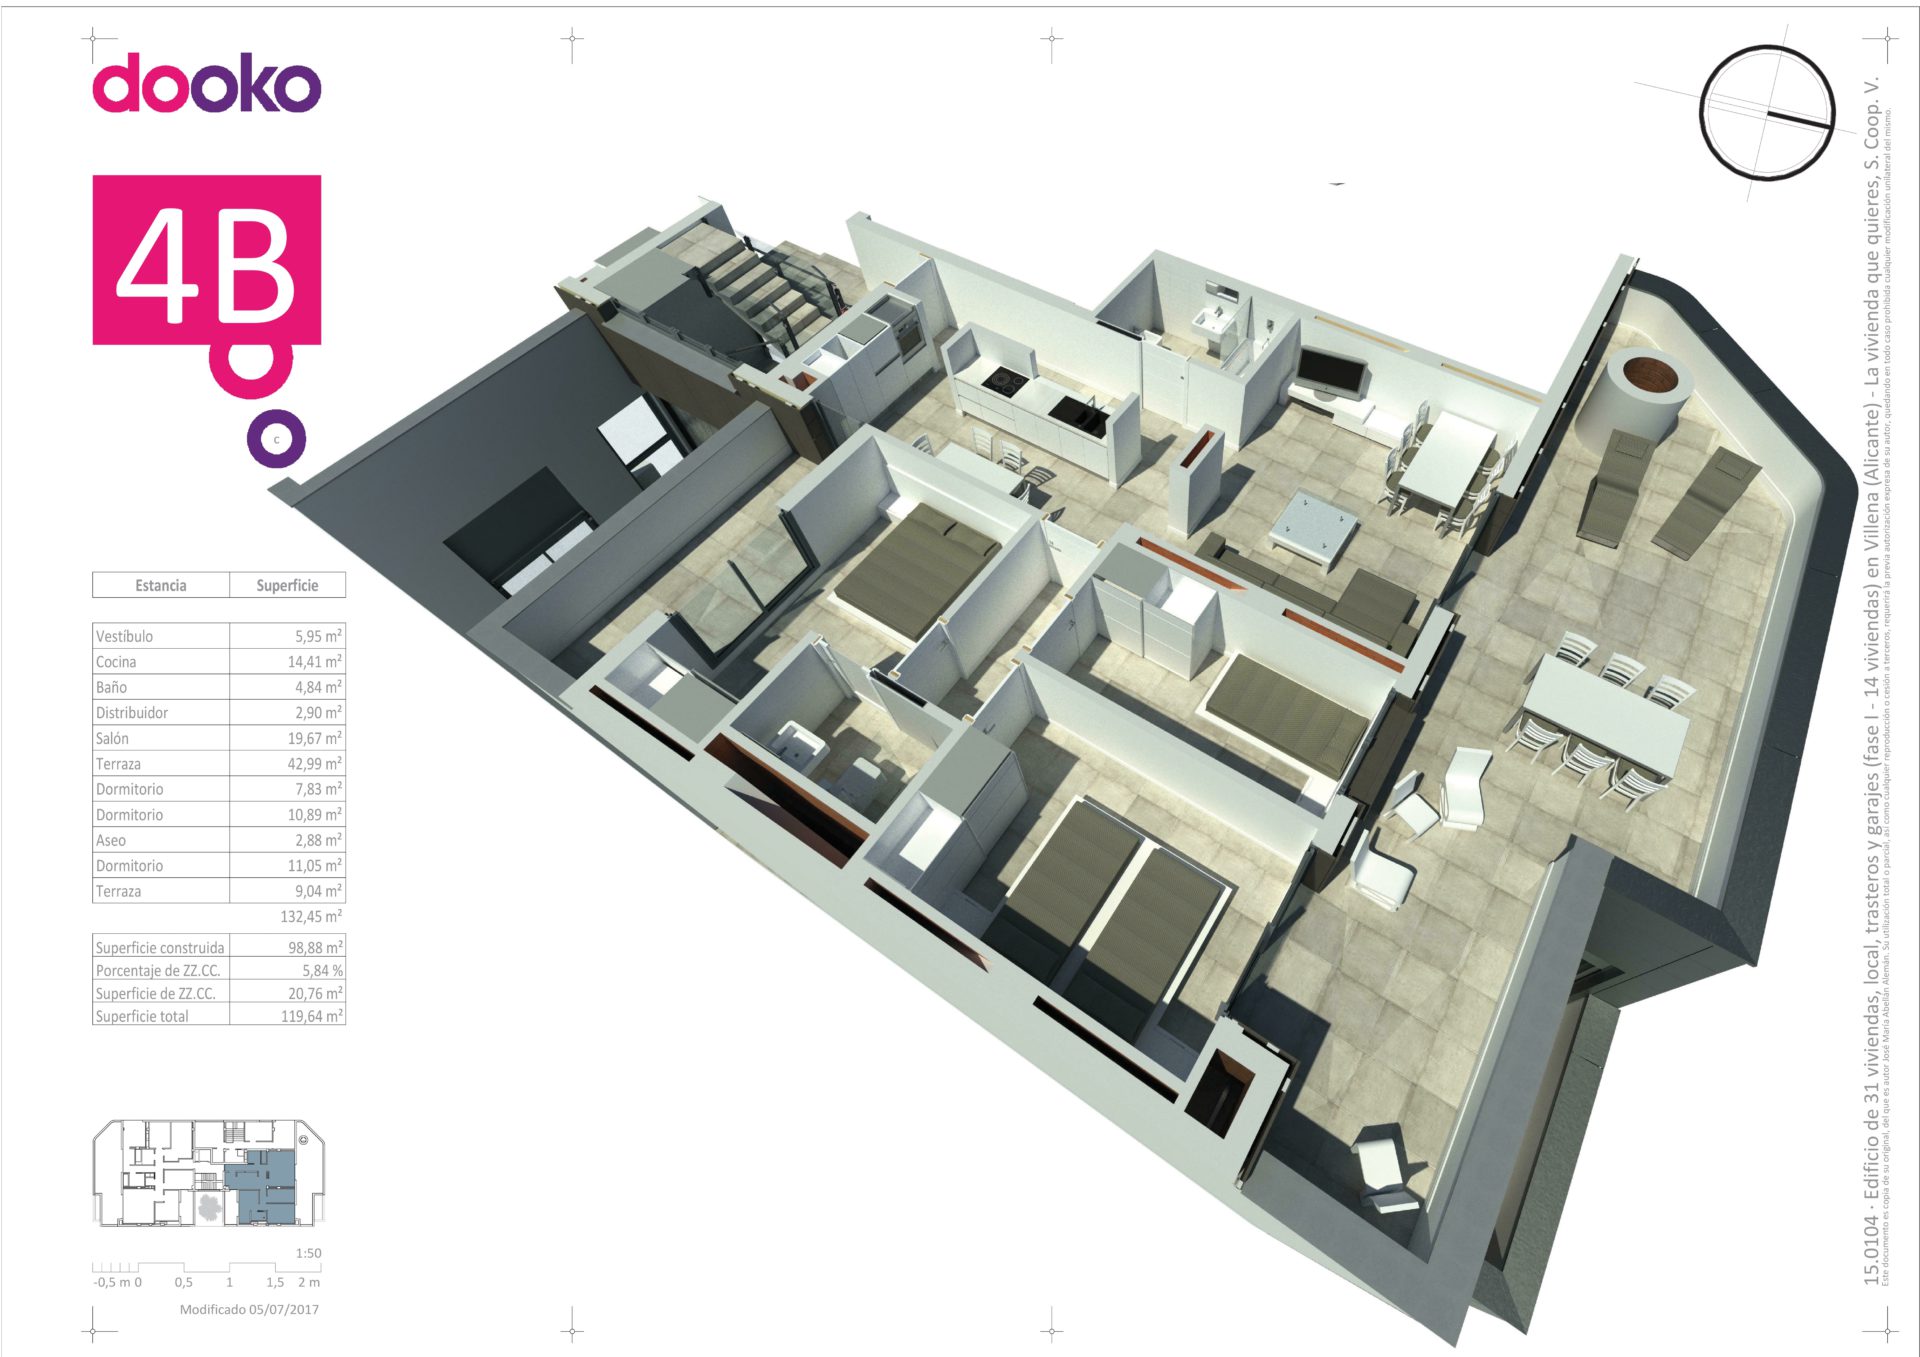 ático-4b-dooko-edificio purpura-villena-vivienda nueva-tu hogar singular